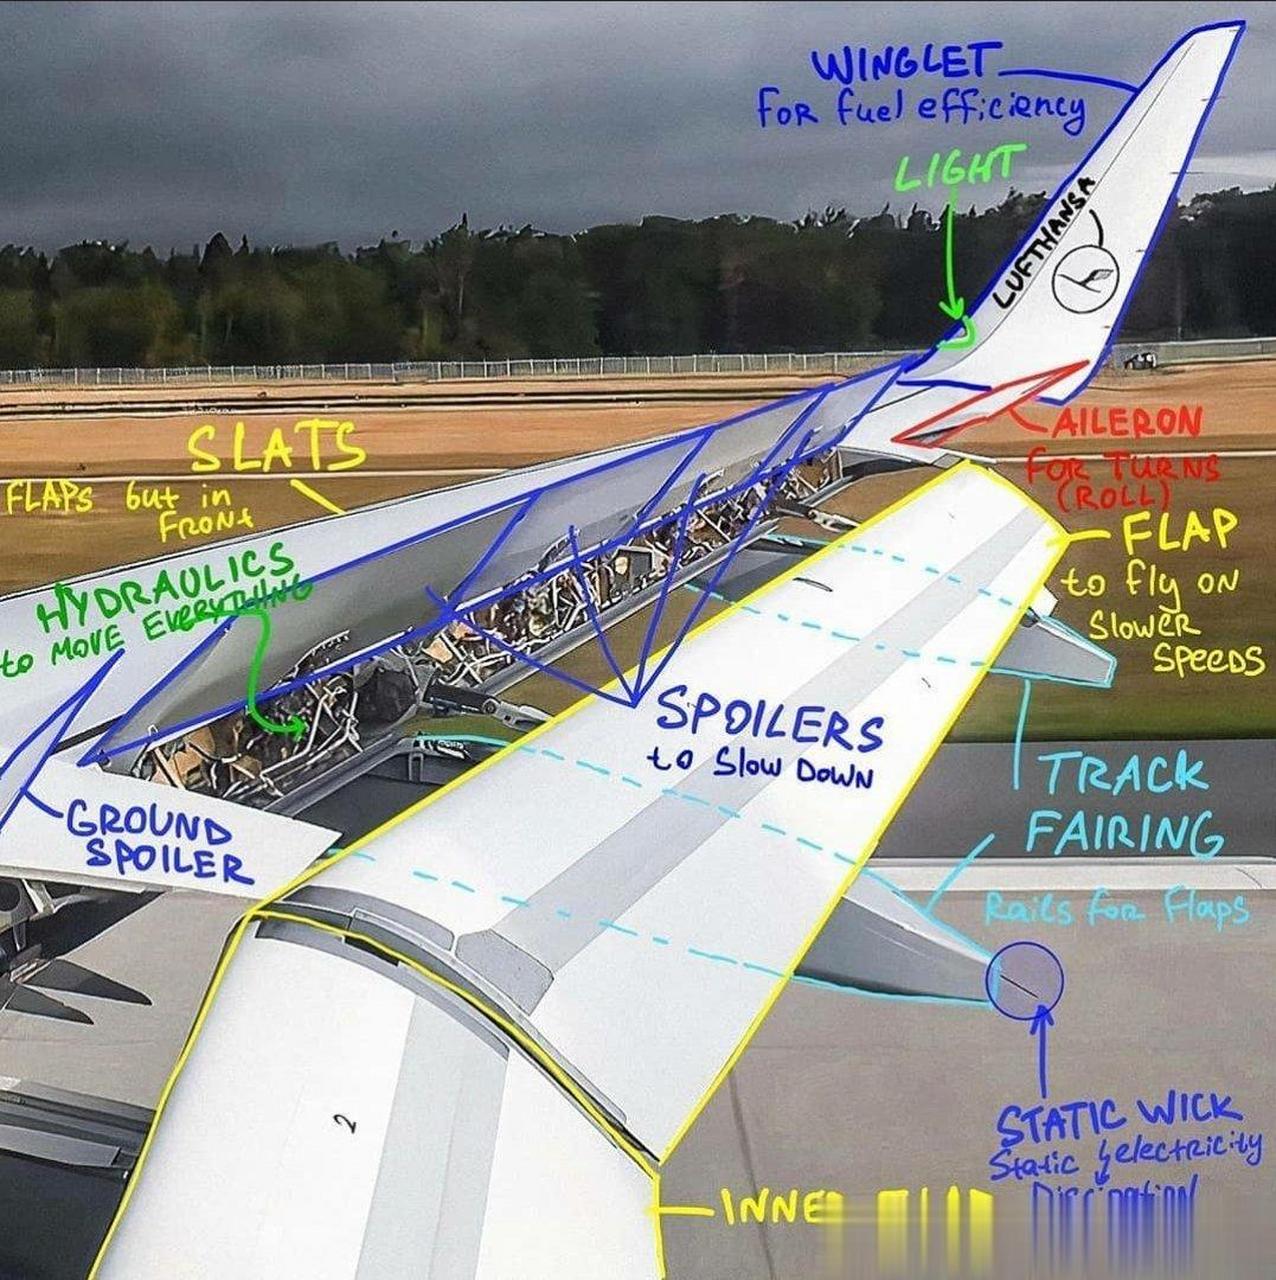 飞机机翼与机身连接图图片